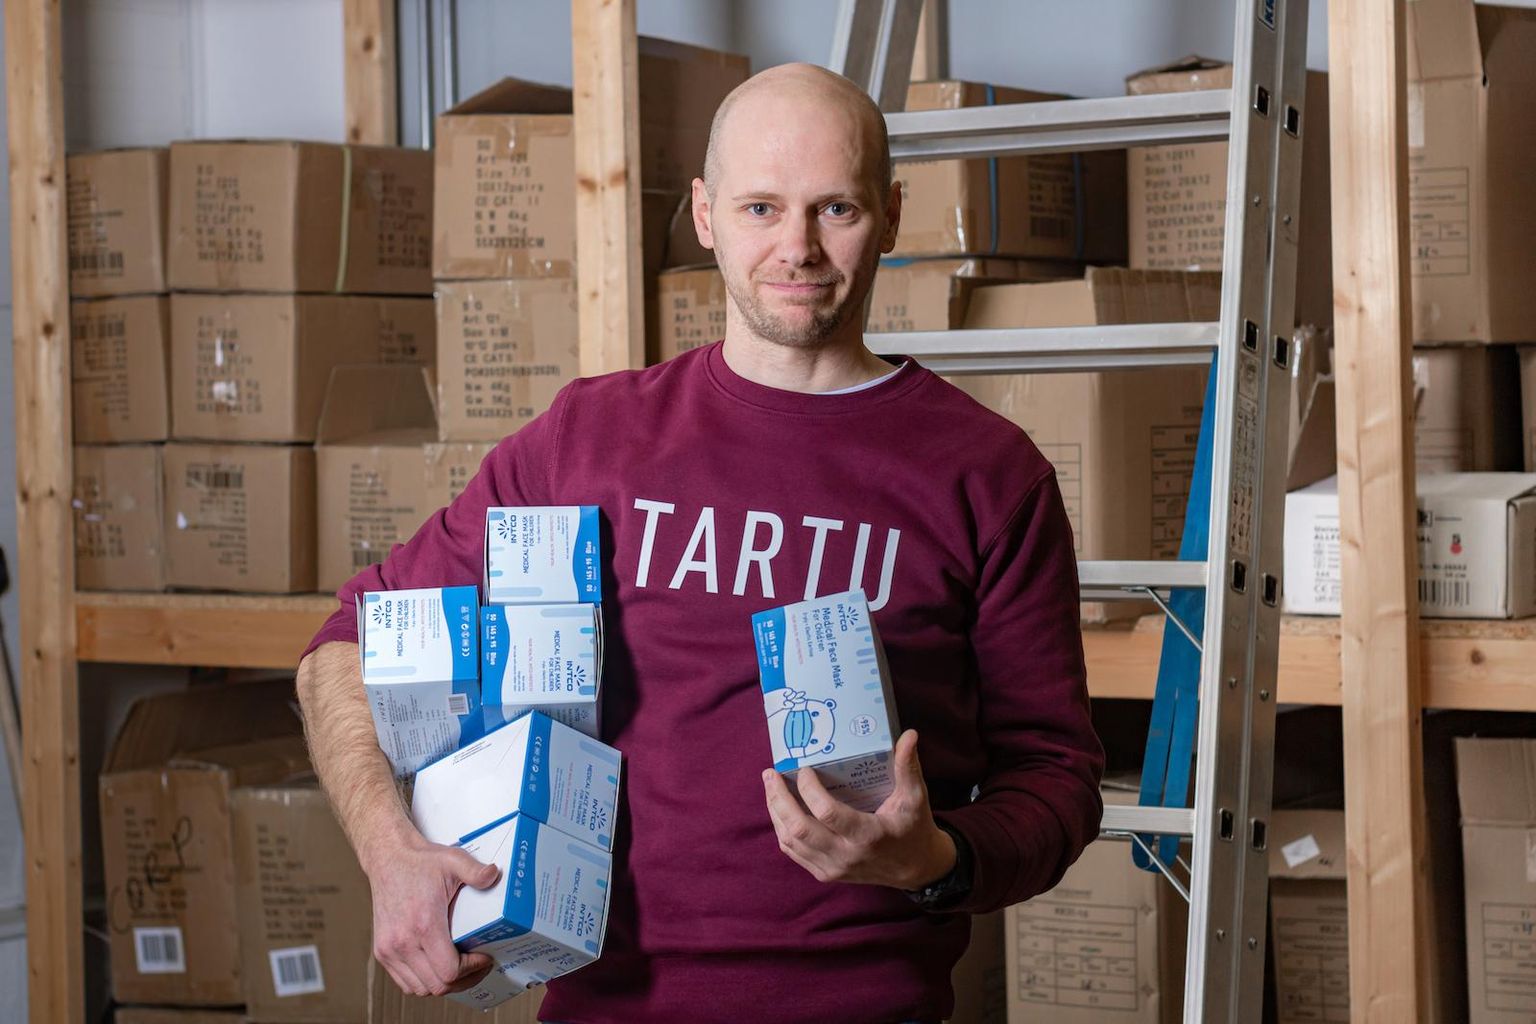 Valgamaalt pärit meeste loodud Tartu firma Corpowear on üks neist, kellele kriis on hästi mõjunud. Firma üks asutajatest ja juhatuse liige Taavi Sepp ütles, et mullune käive ulatus 13 miljoni euroni.